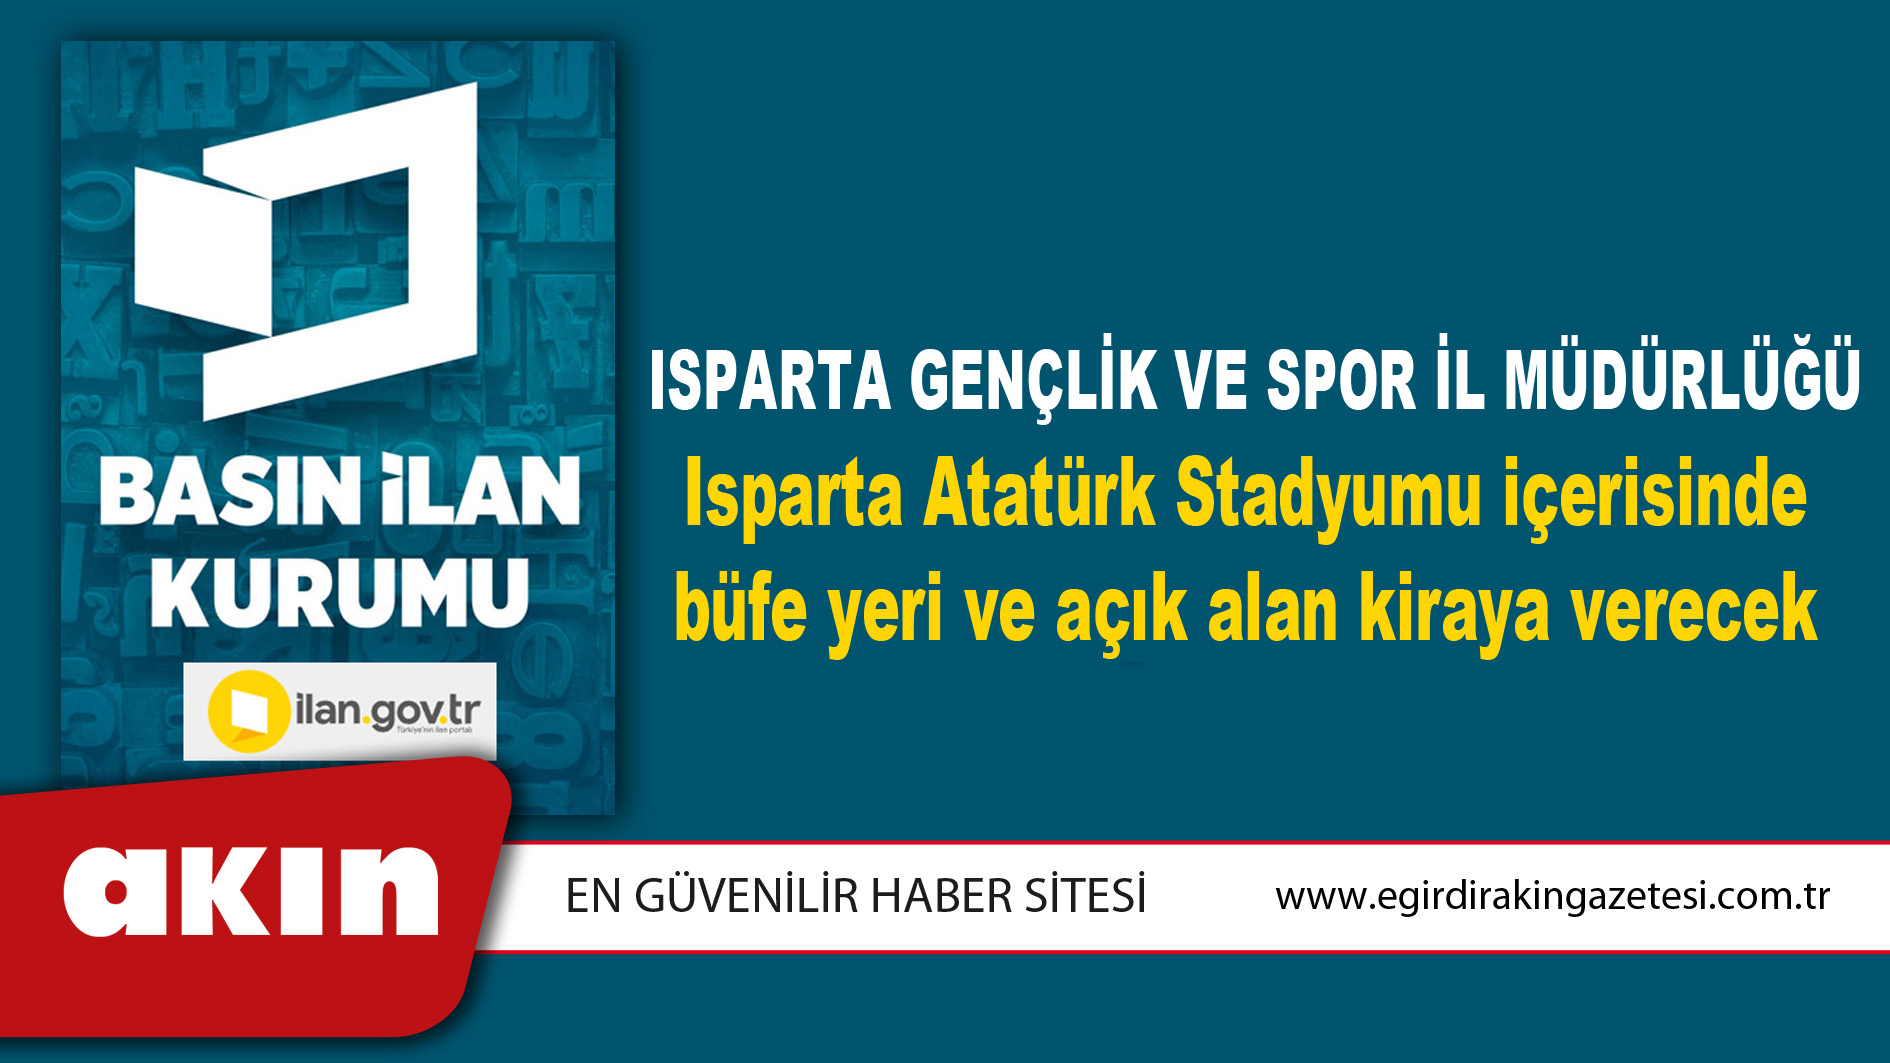 Isparta Gençlik Ve Spor İl Müdürlüğü Isparta Atatürk Stadyumu içerisinde büfe yeri ve açık alan kiraya verecek